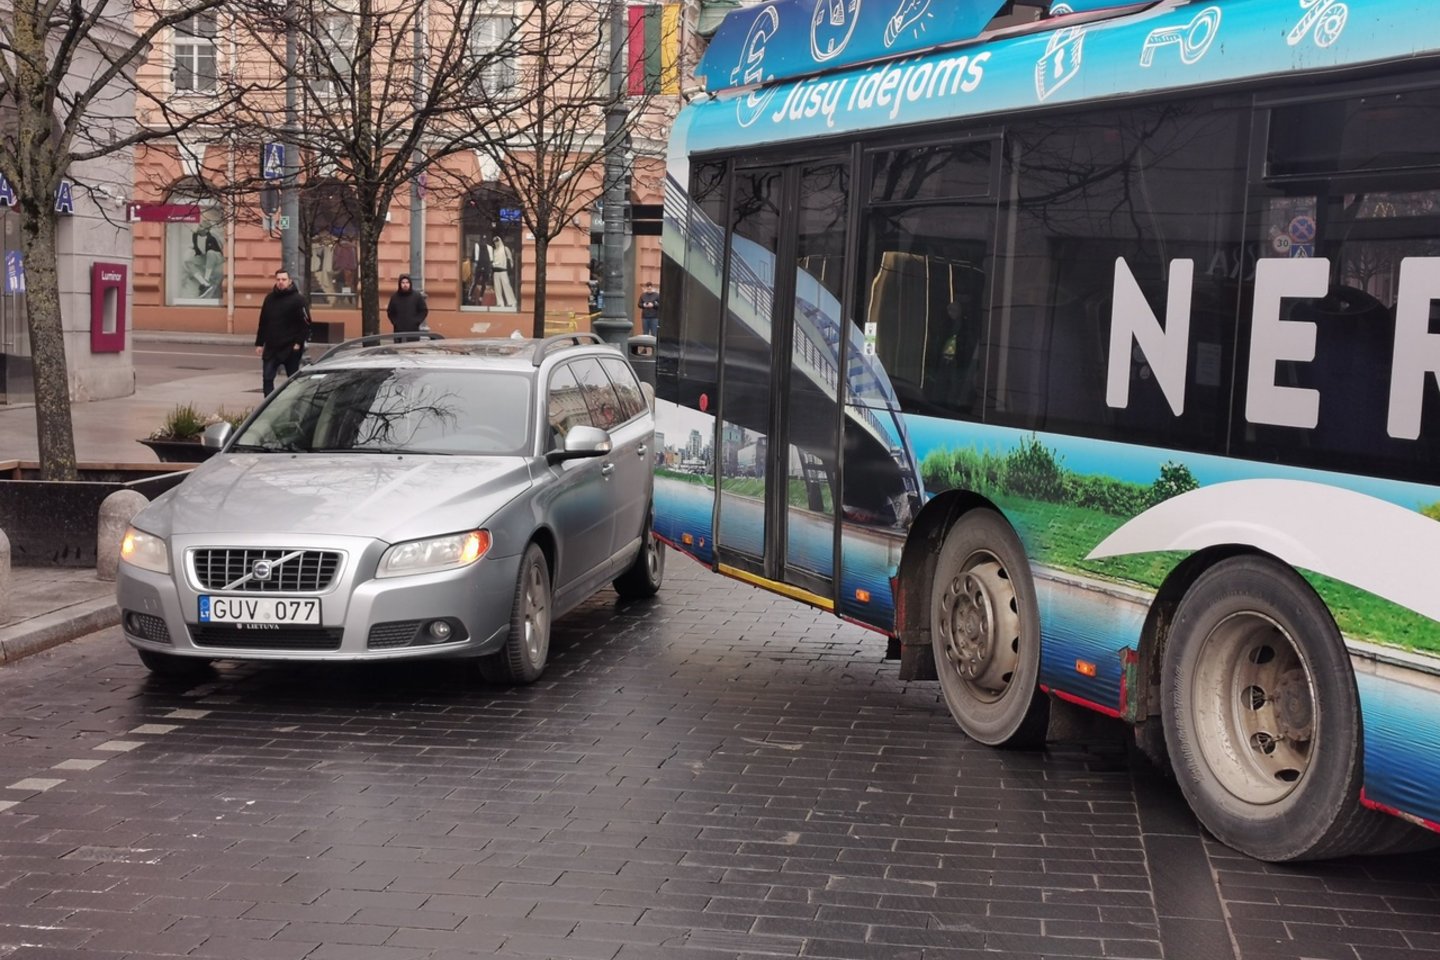  Net ir uždraudus eismą Gedimino pr. Vilniuje, čia vis tiek sugebėjo susidurti troleibusas ir „Volvo“.<br> R.Danisevičiaus nuotr.